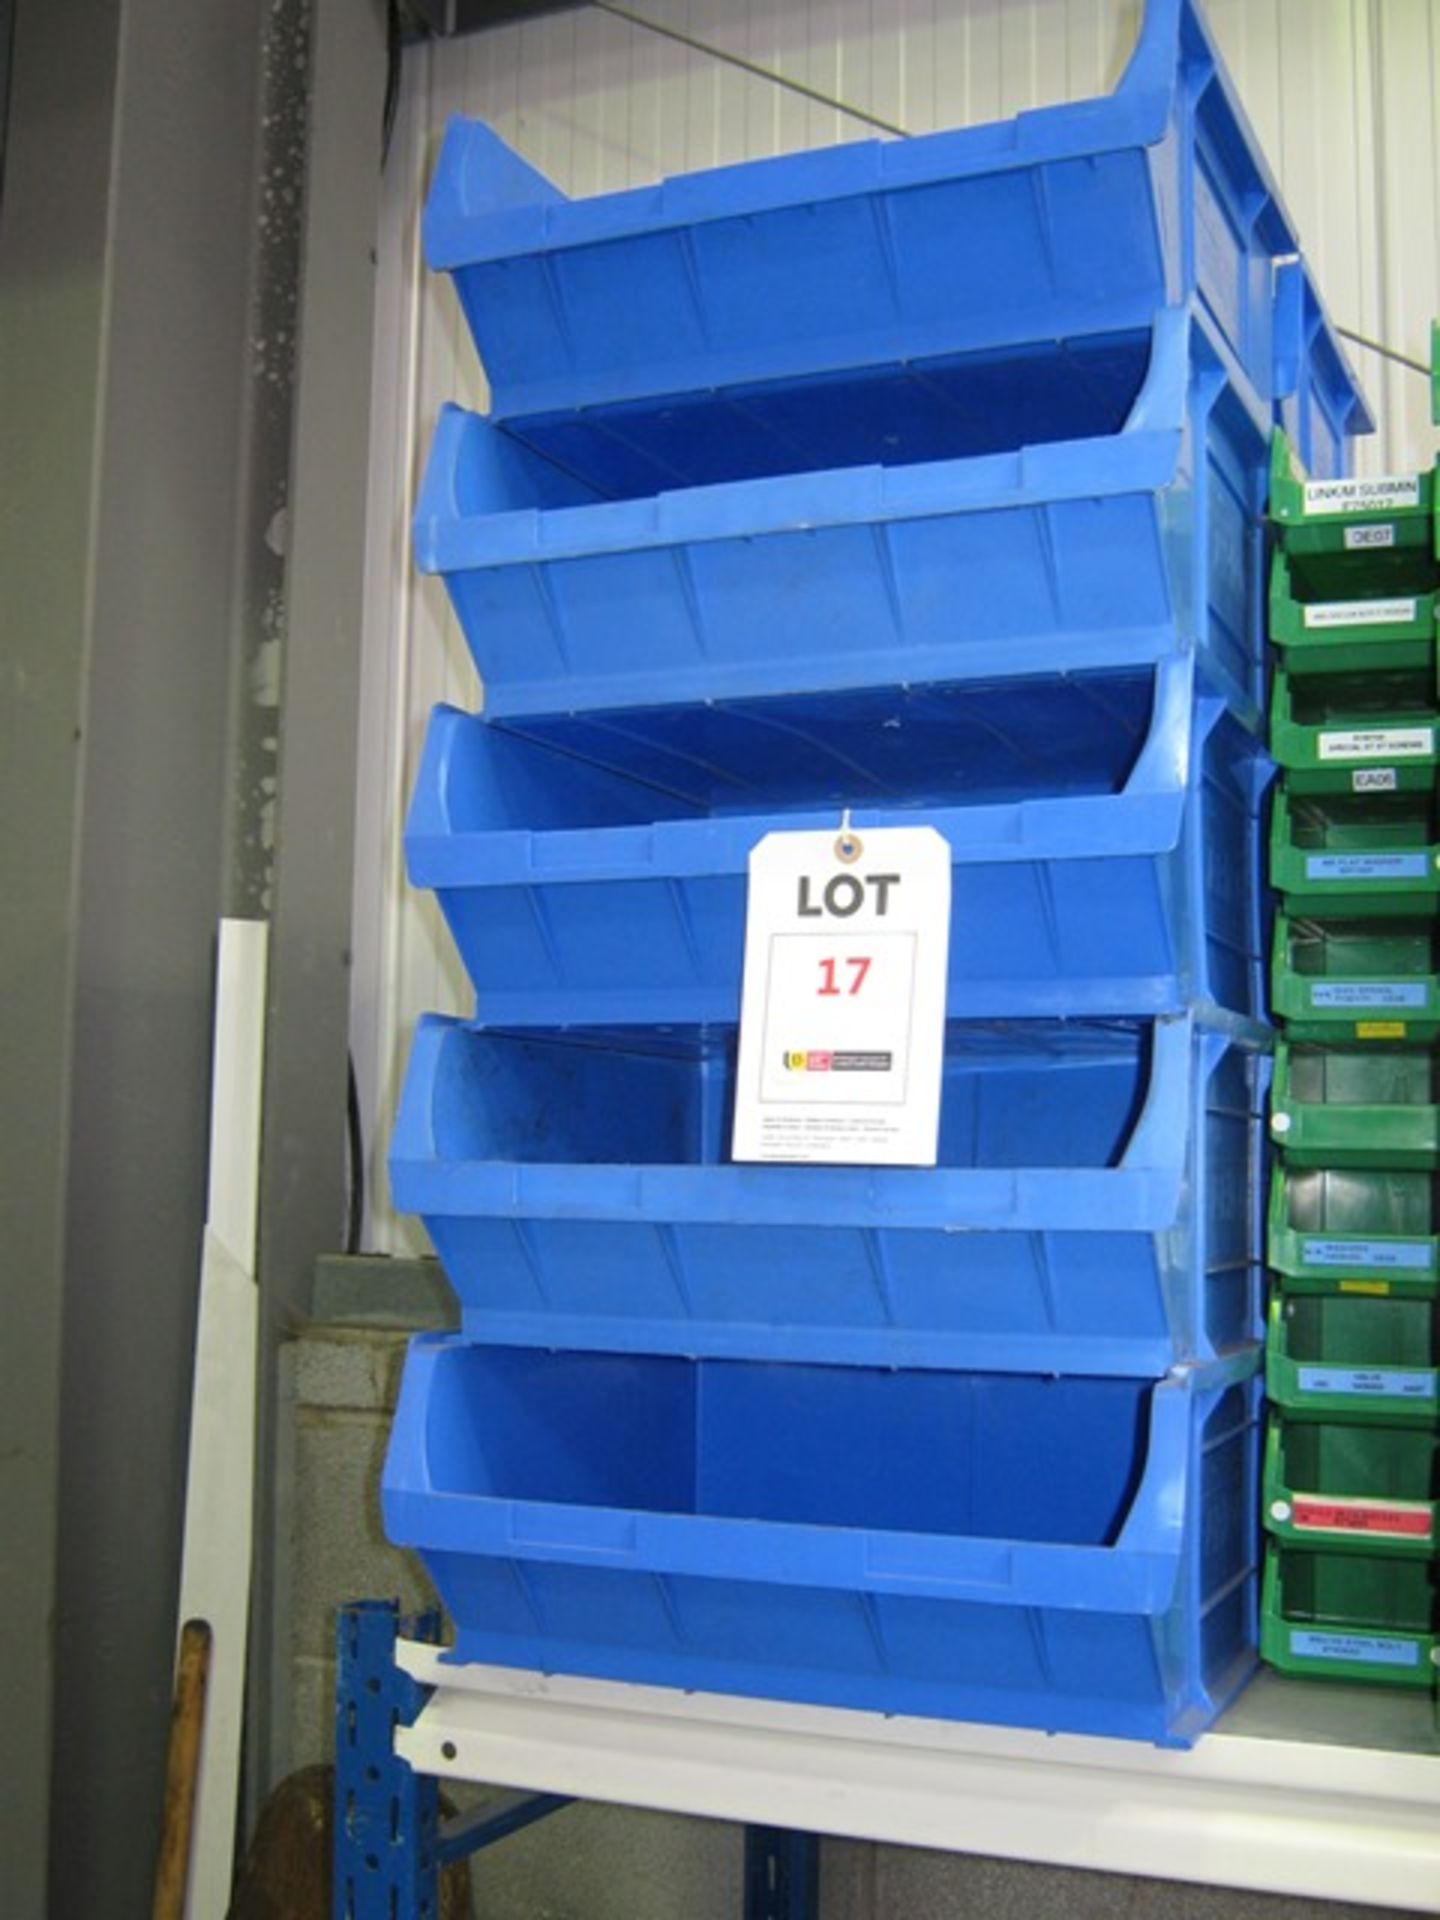 10 plastic storage bins (size 6), size 400mm x 360mm x 180mm high